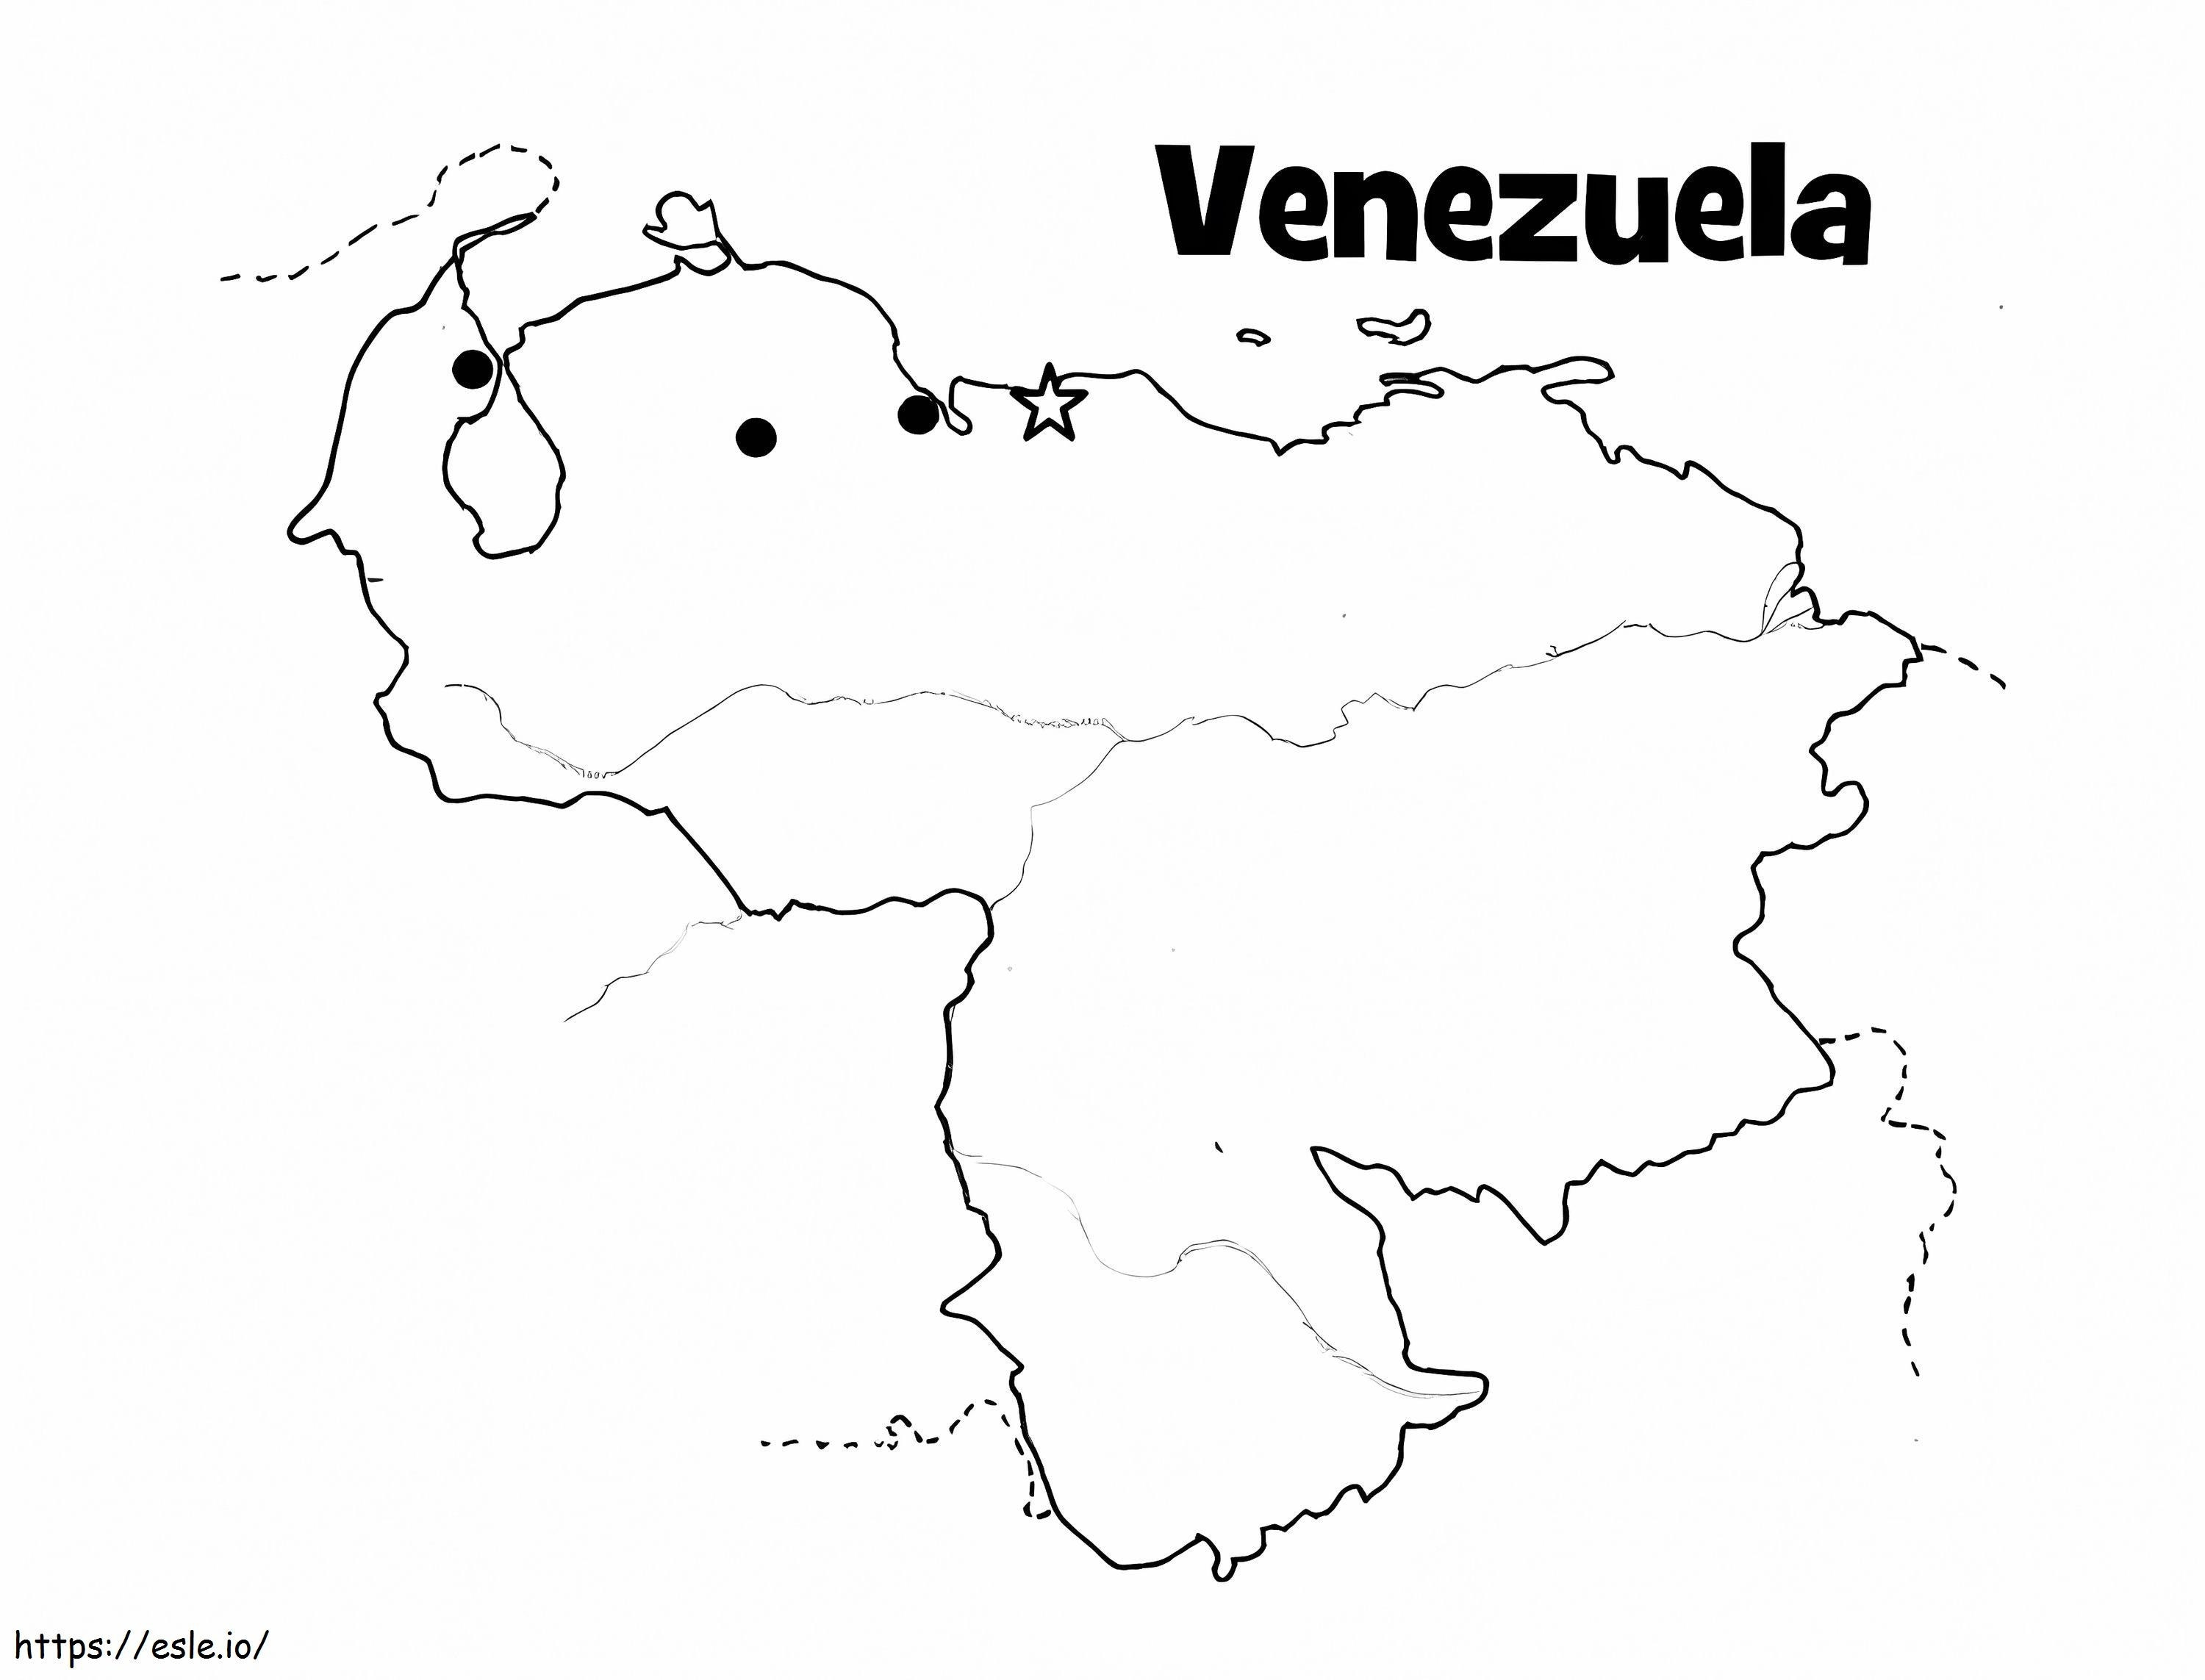 Immagine da colorare della mappa del Venezuela da colorare